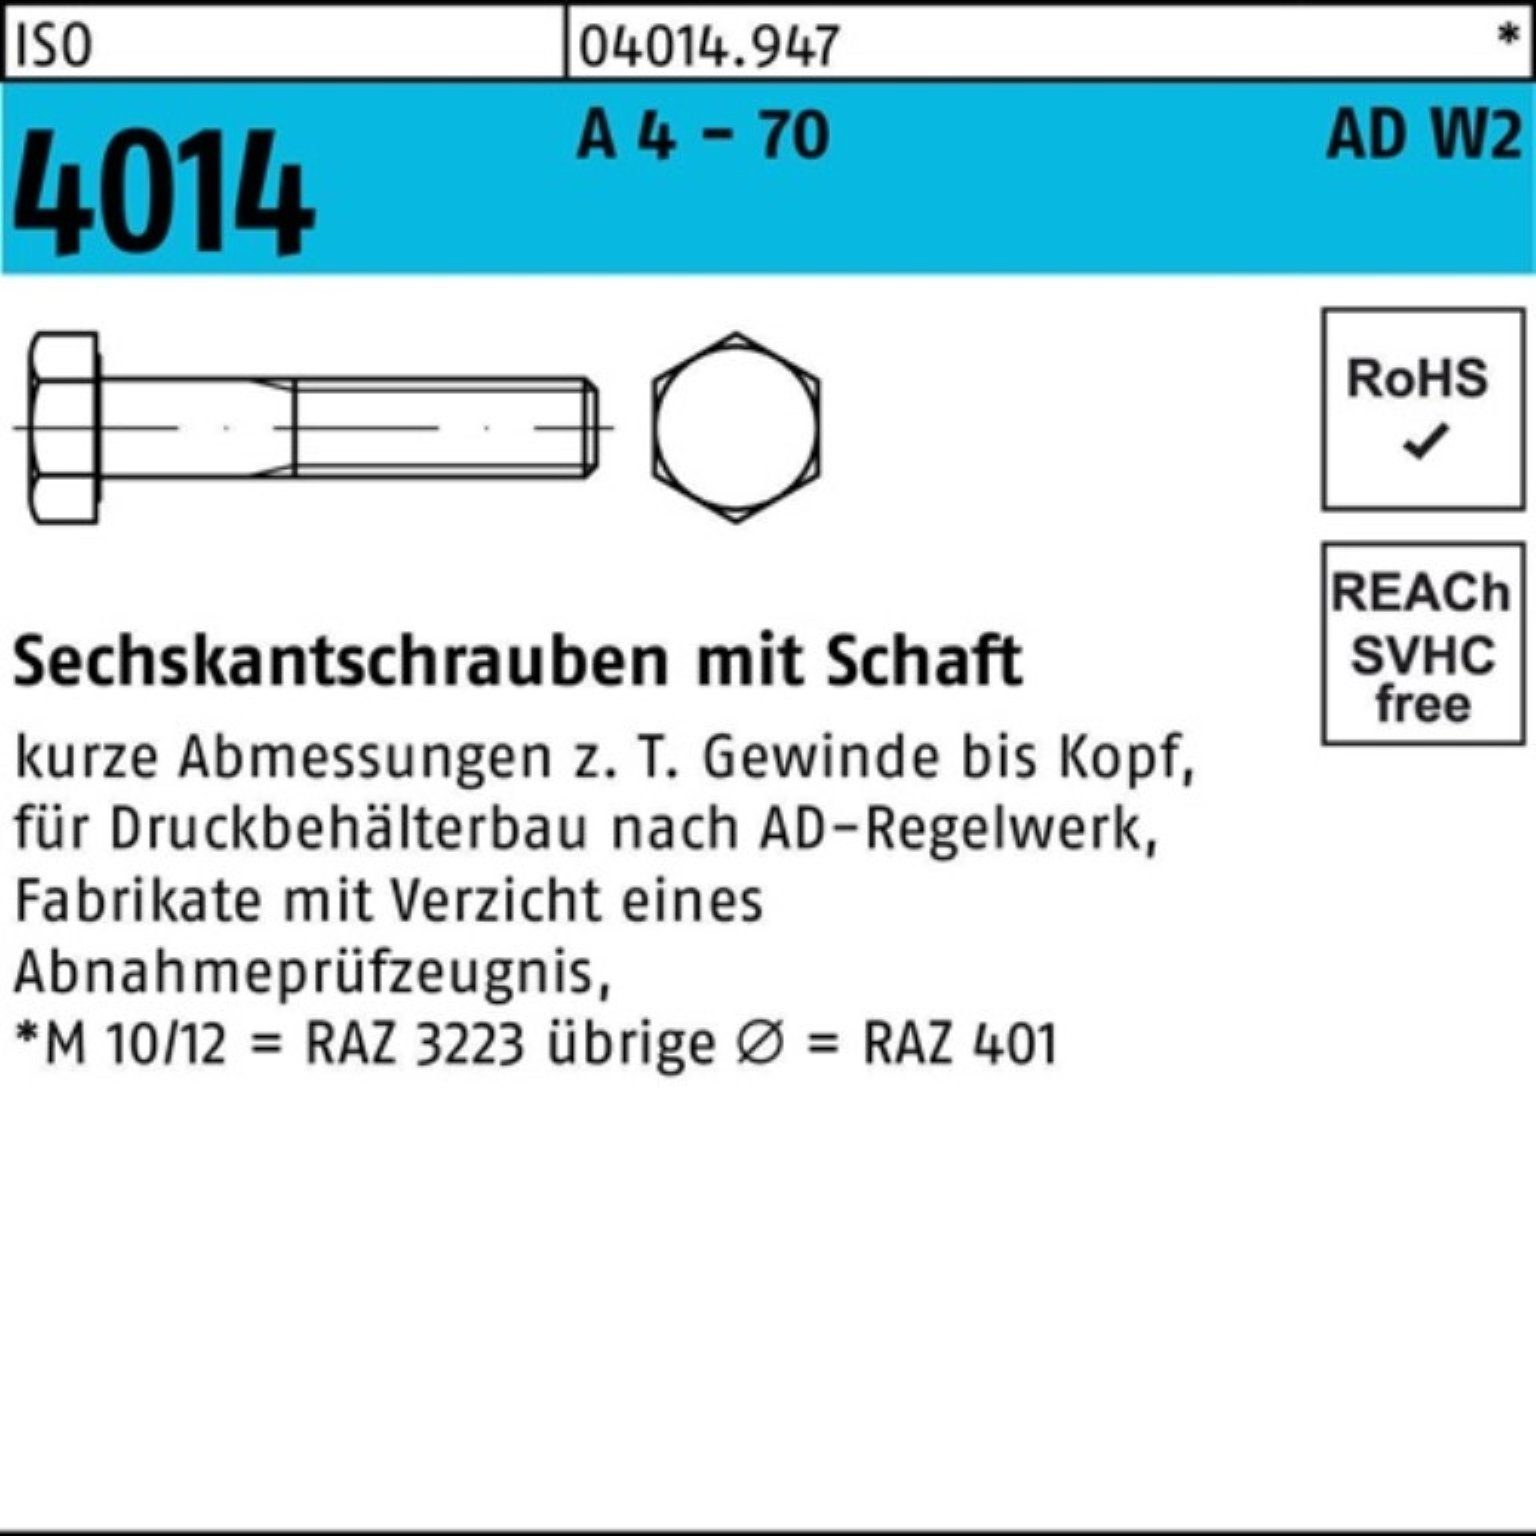 Bufab Sechskantschraube 100er Pack Sechskantschraube ISO 4014 Schaft M12x 110 A 4 - 70 AD-W2 2